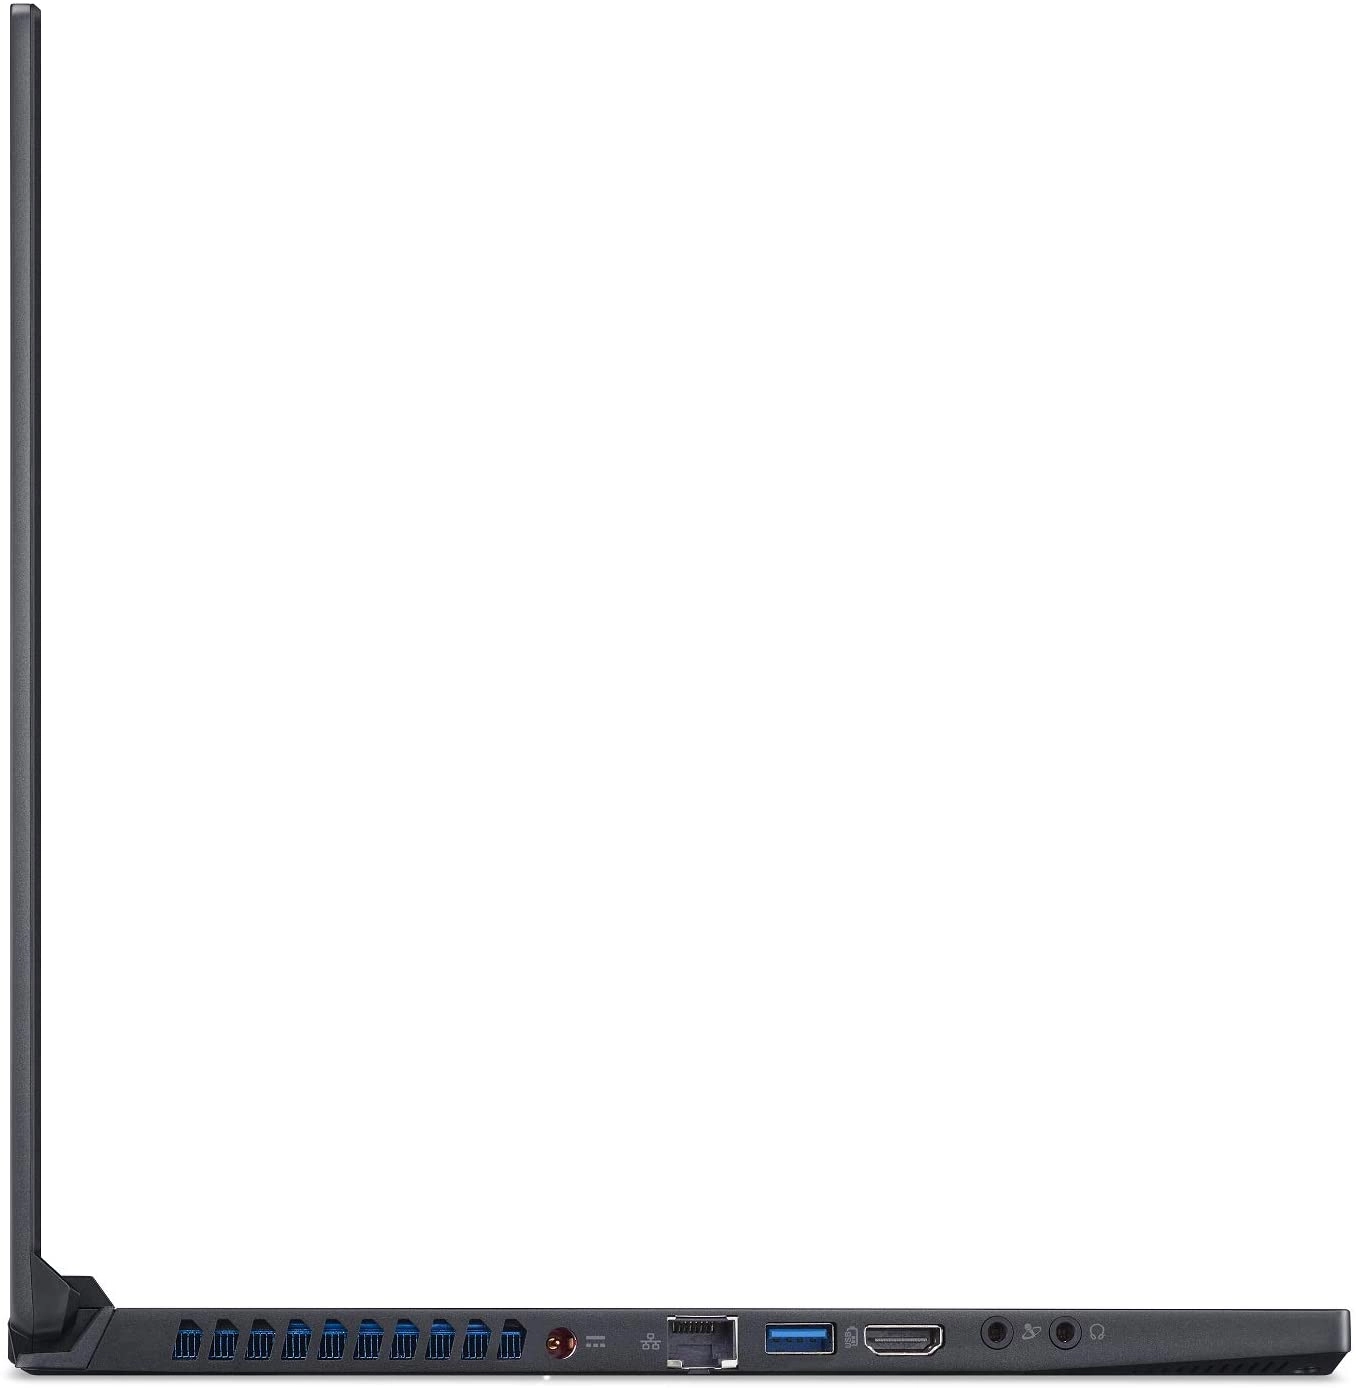 Acer PT515-52-73L3 laptop image